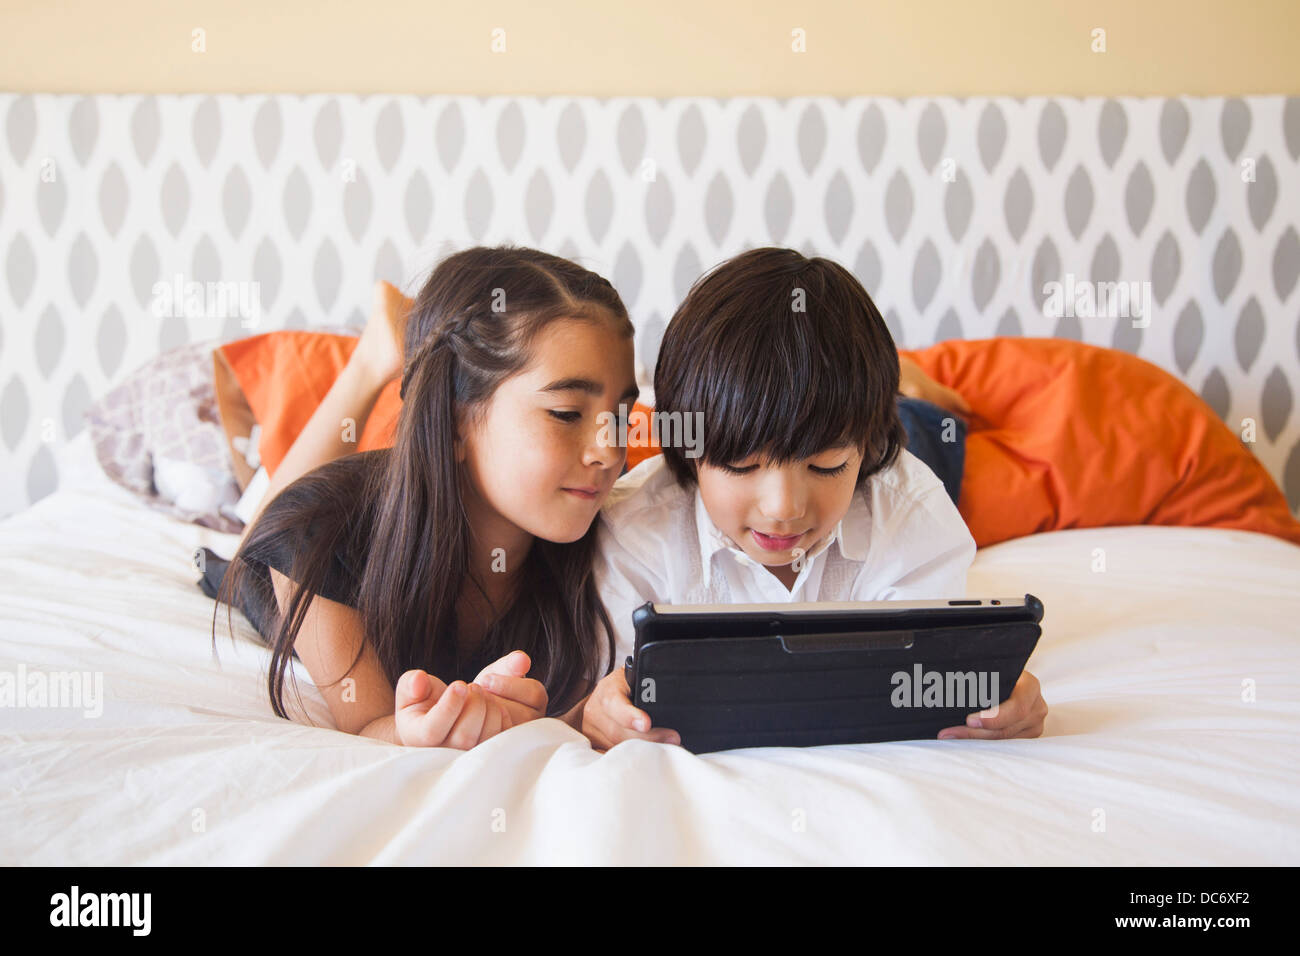 Siblings (8-9) using digital tablet in bedroom Stock Photo